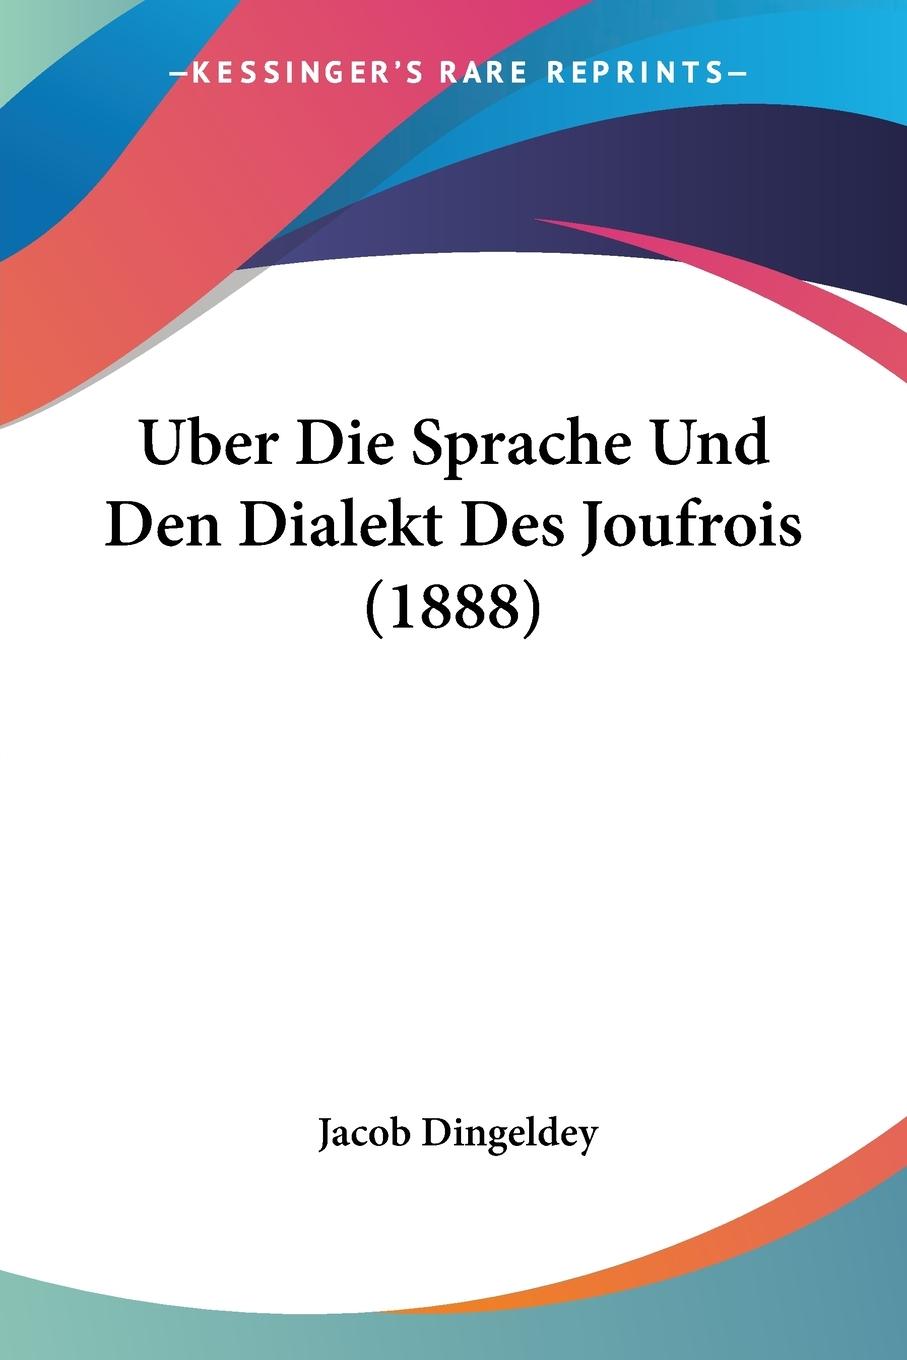 Uber Die Sprache Und Den Dialekt Des Joufrois (1888) - Dingeldey, Jacob